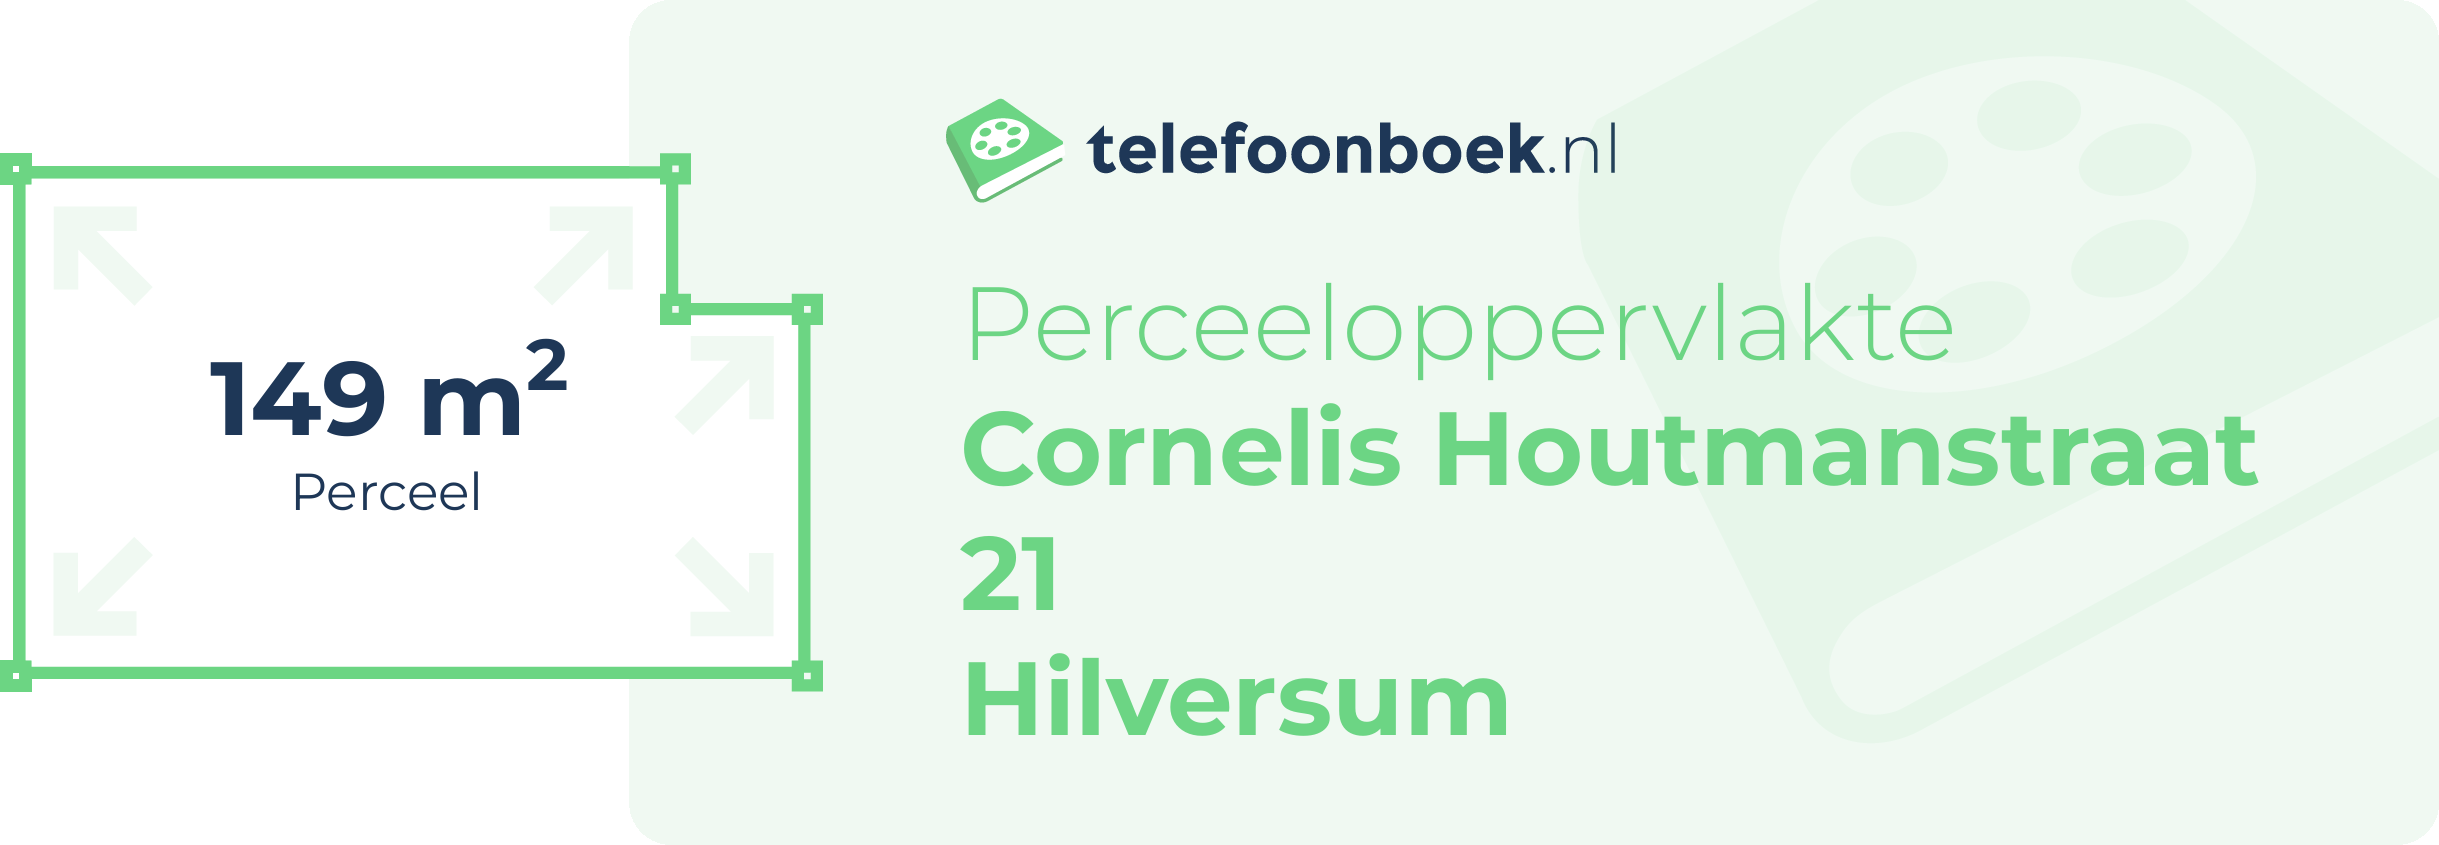 Perceeloppervlakte Cornelis Houtmanstraat 21 Hilversum